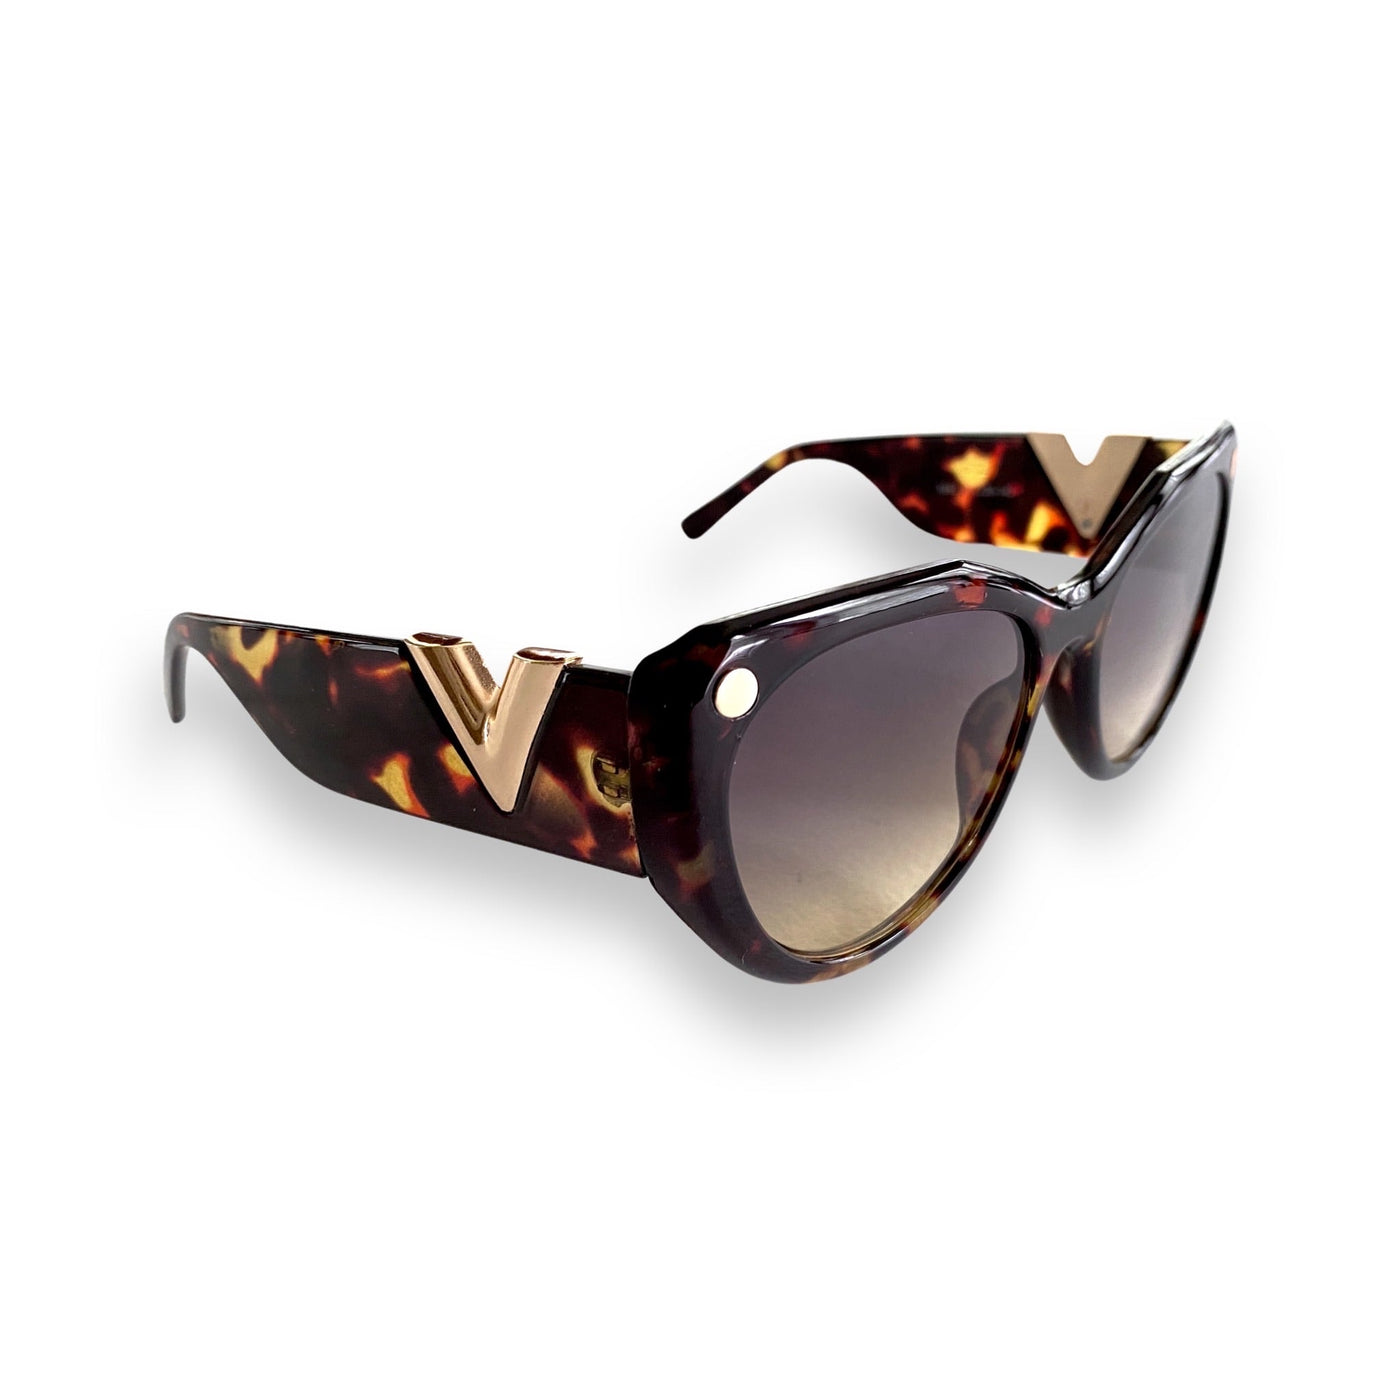 My Retro Cat Eye Sunglasses in Leopard - Copper + Rose